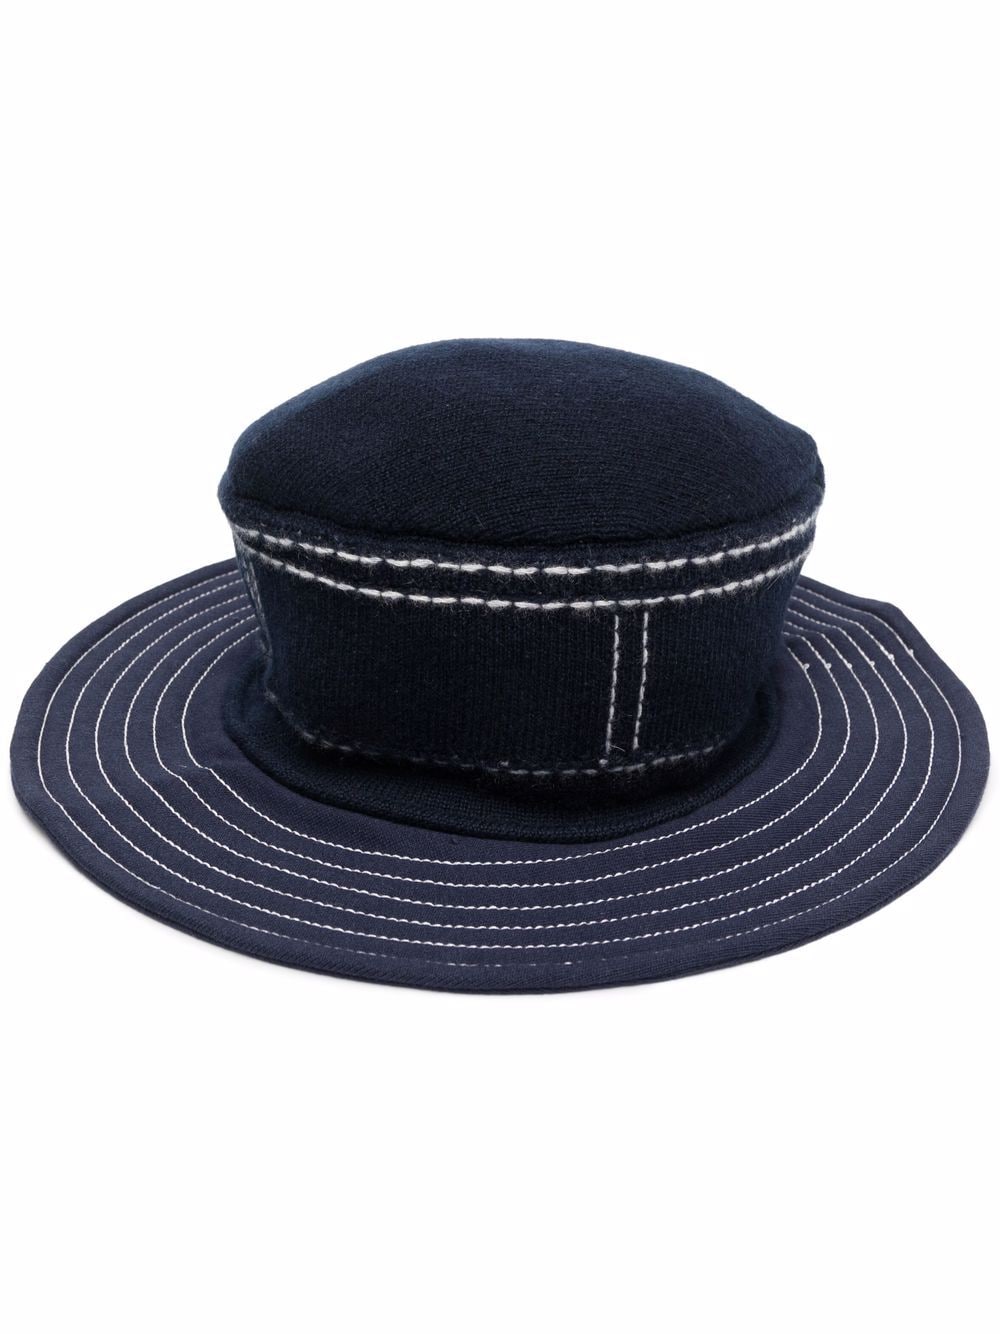 stitch-detail wide-brim hat